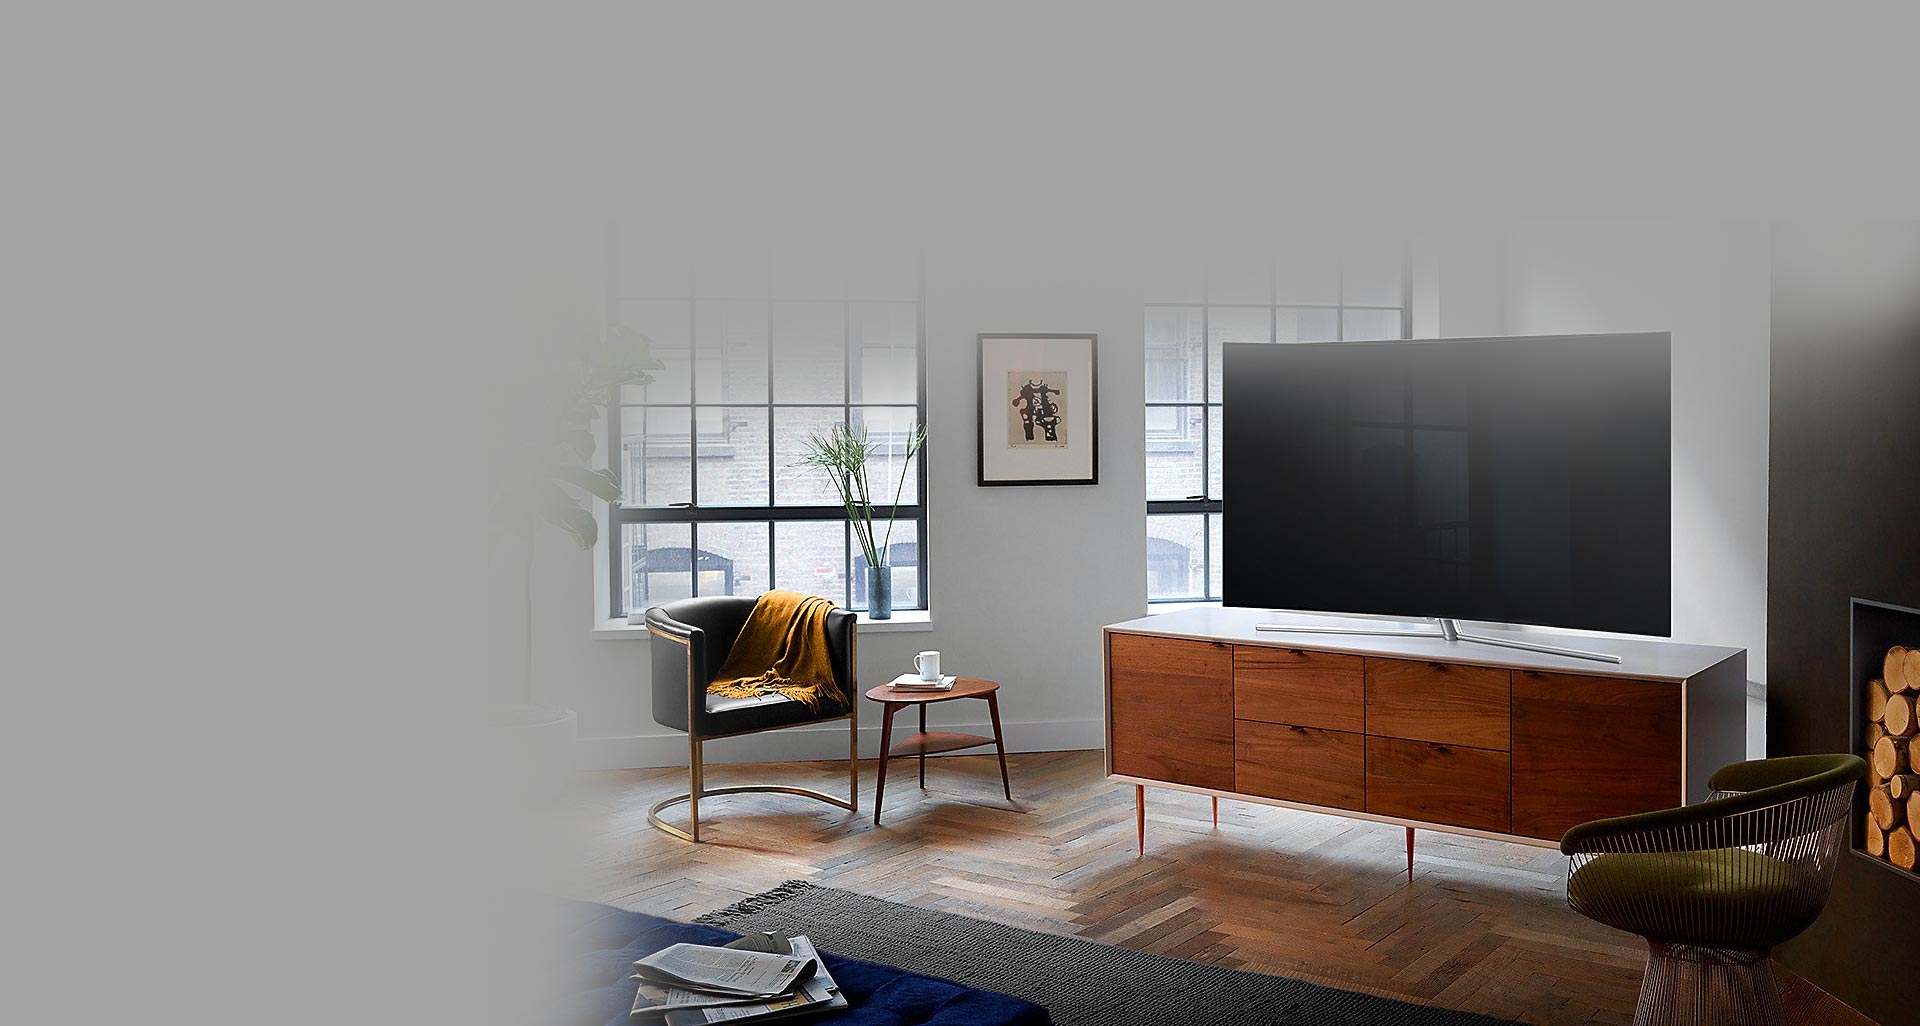 نظم و زیبایی خیره کننده فضای خانه با تلویزیون Q78C